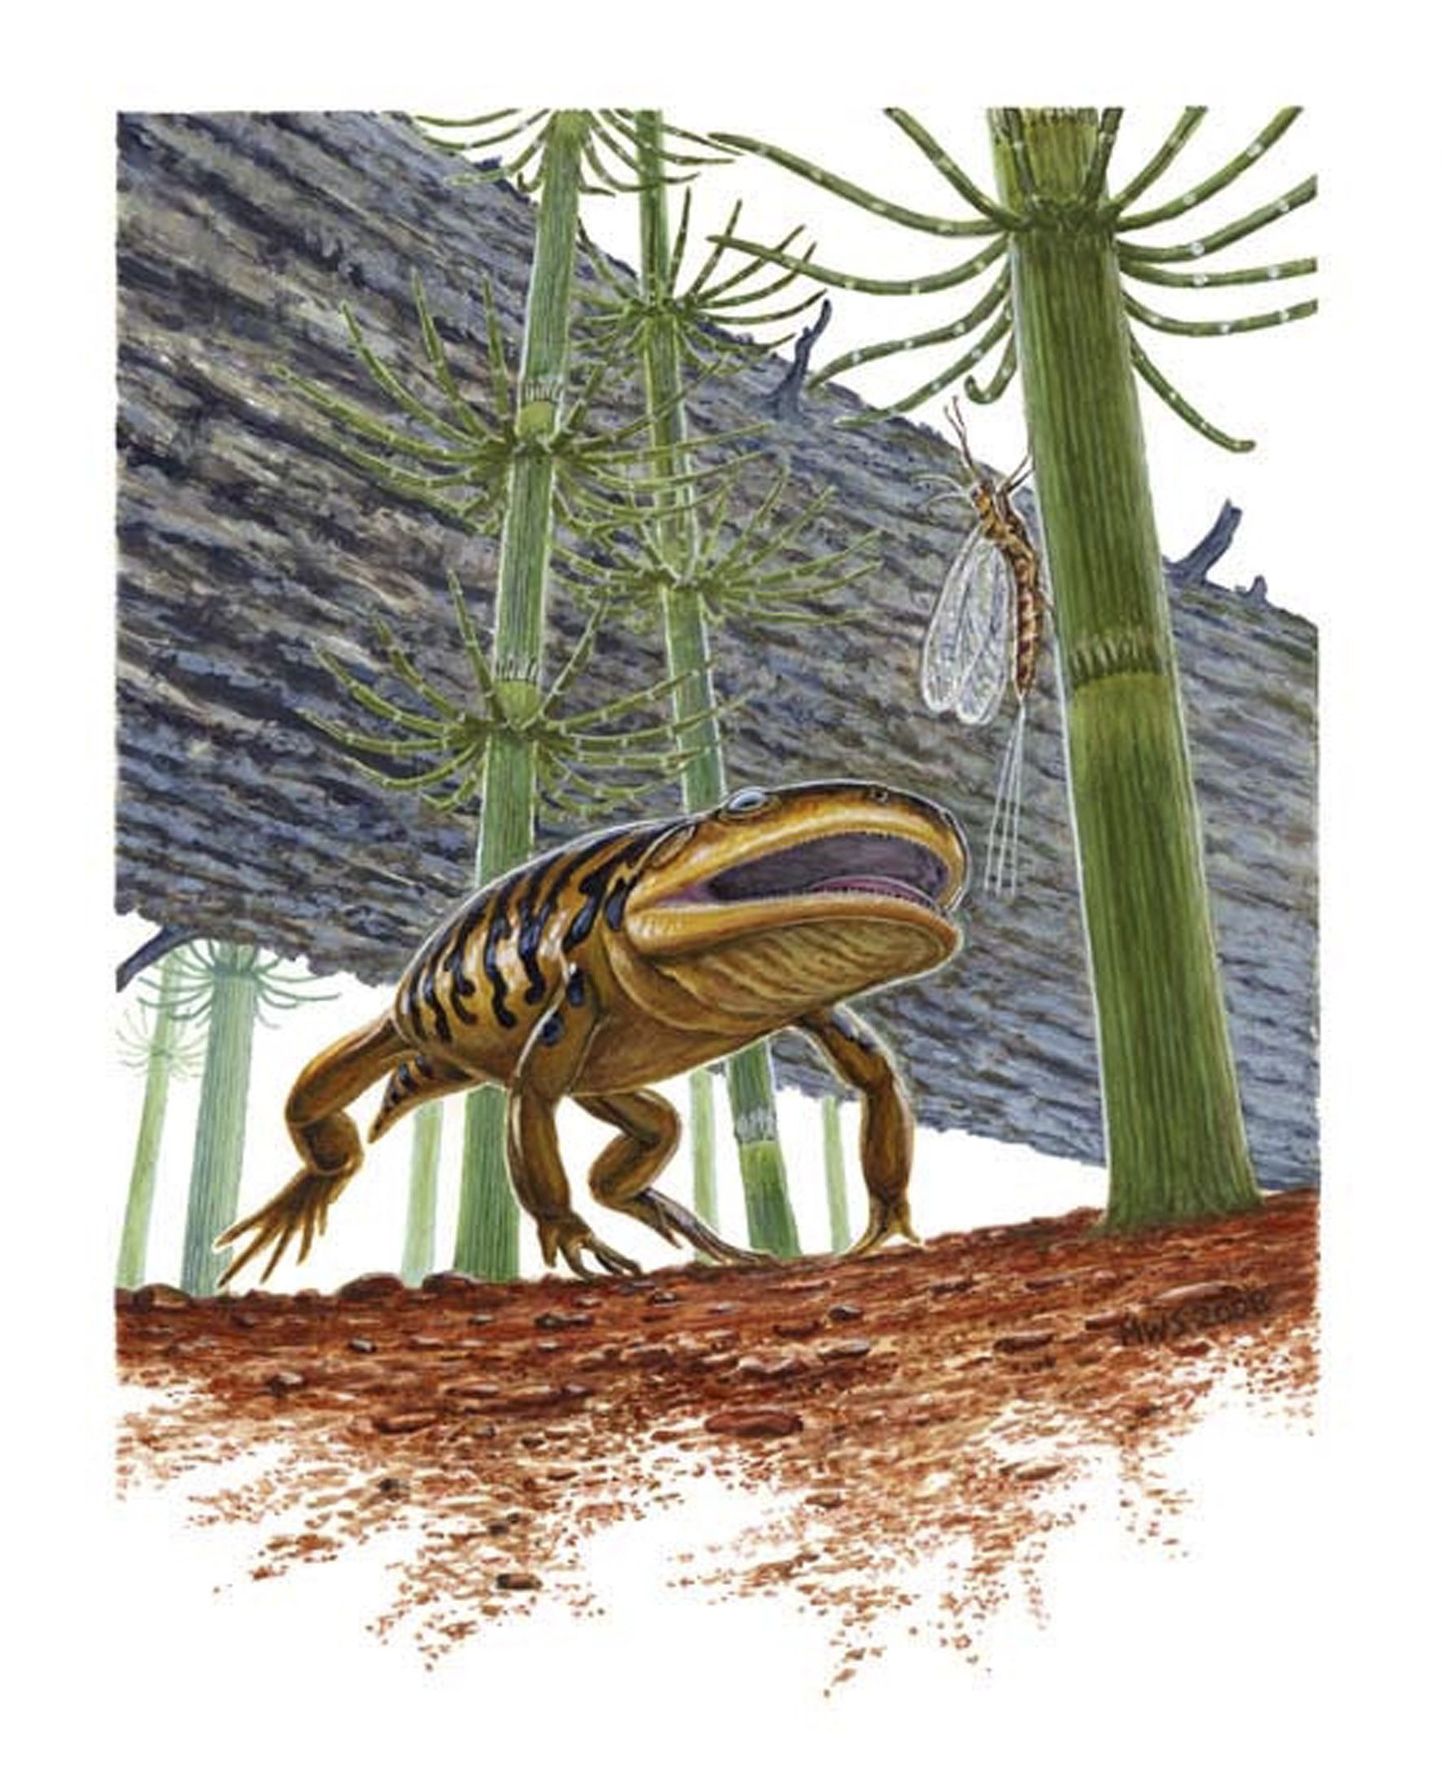 Kunstniku nägemus Gerobatrachus hottonist ehk 290 miljoni aasta vanusest «frogamandrist»